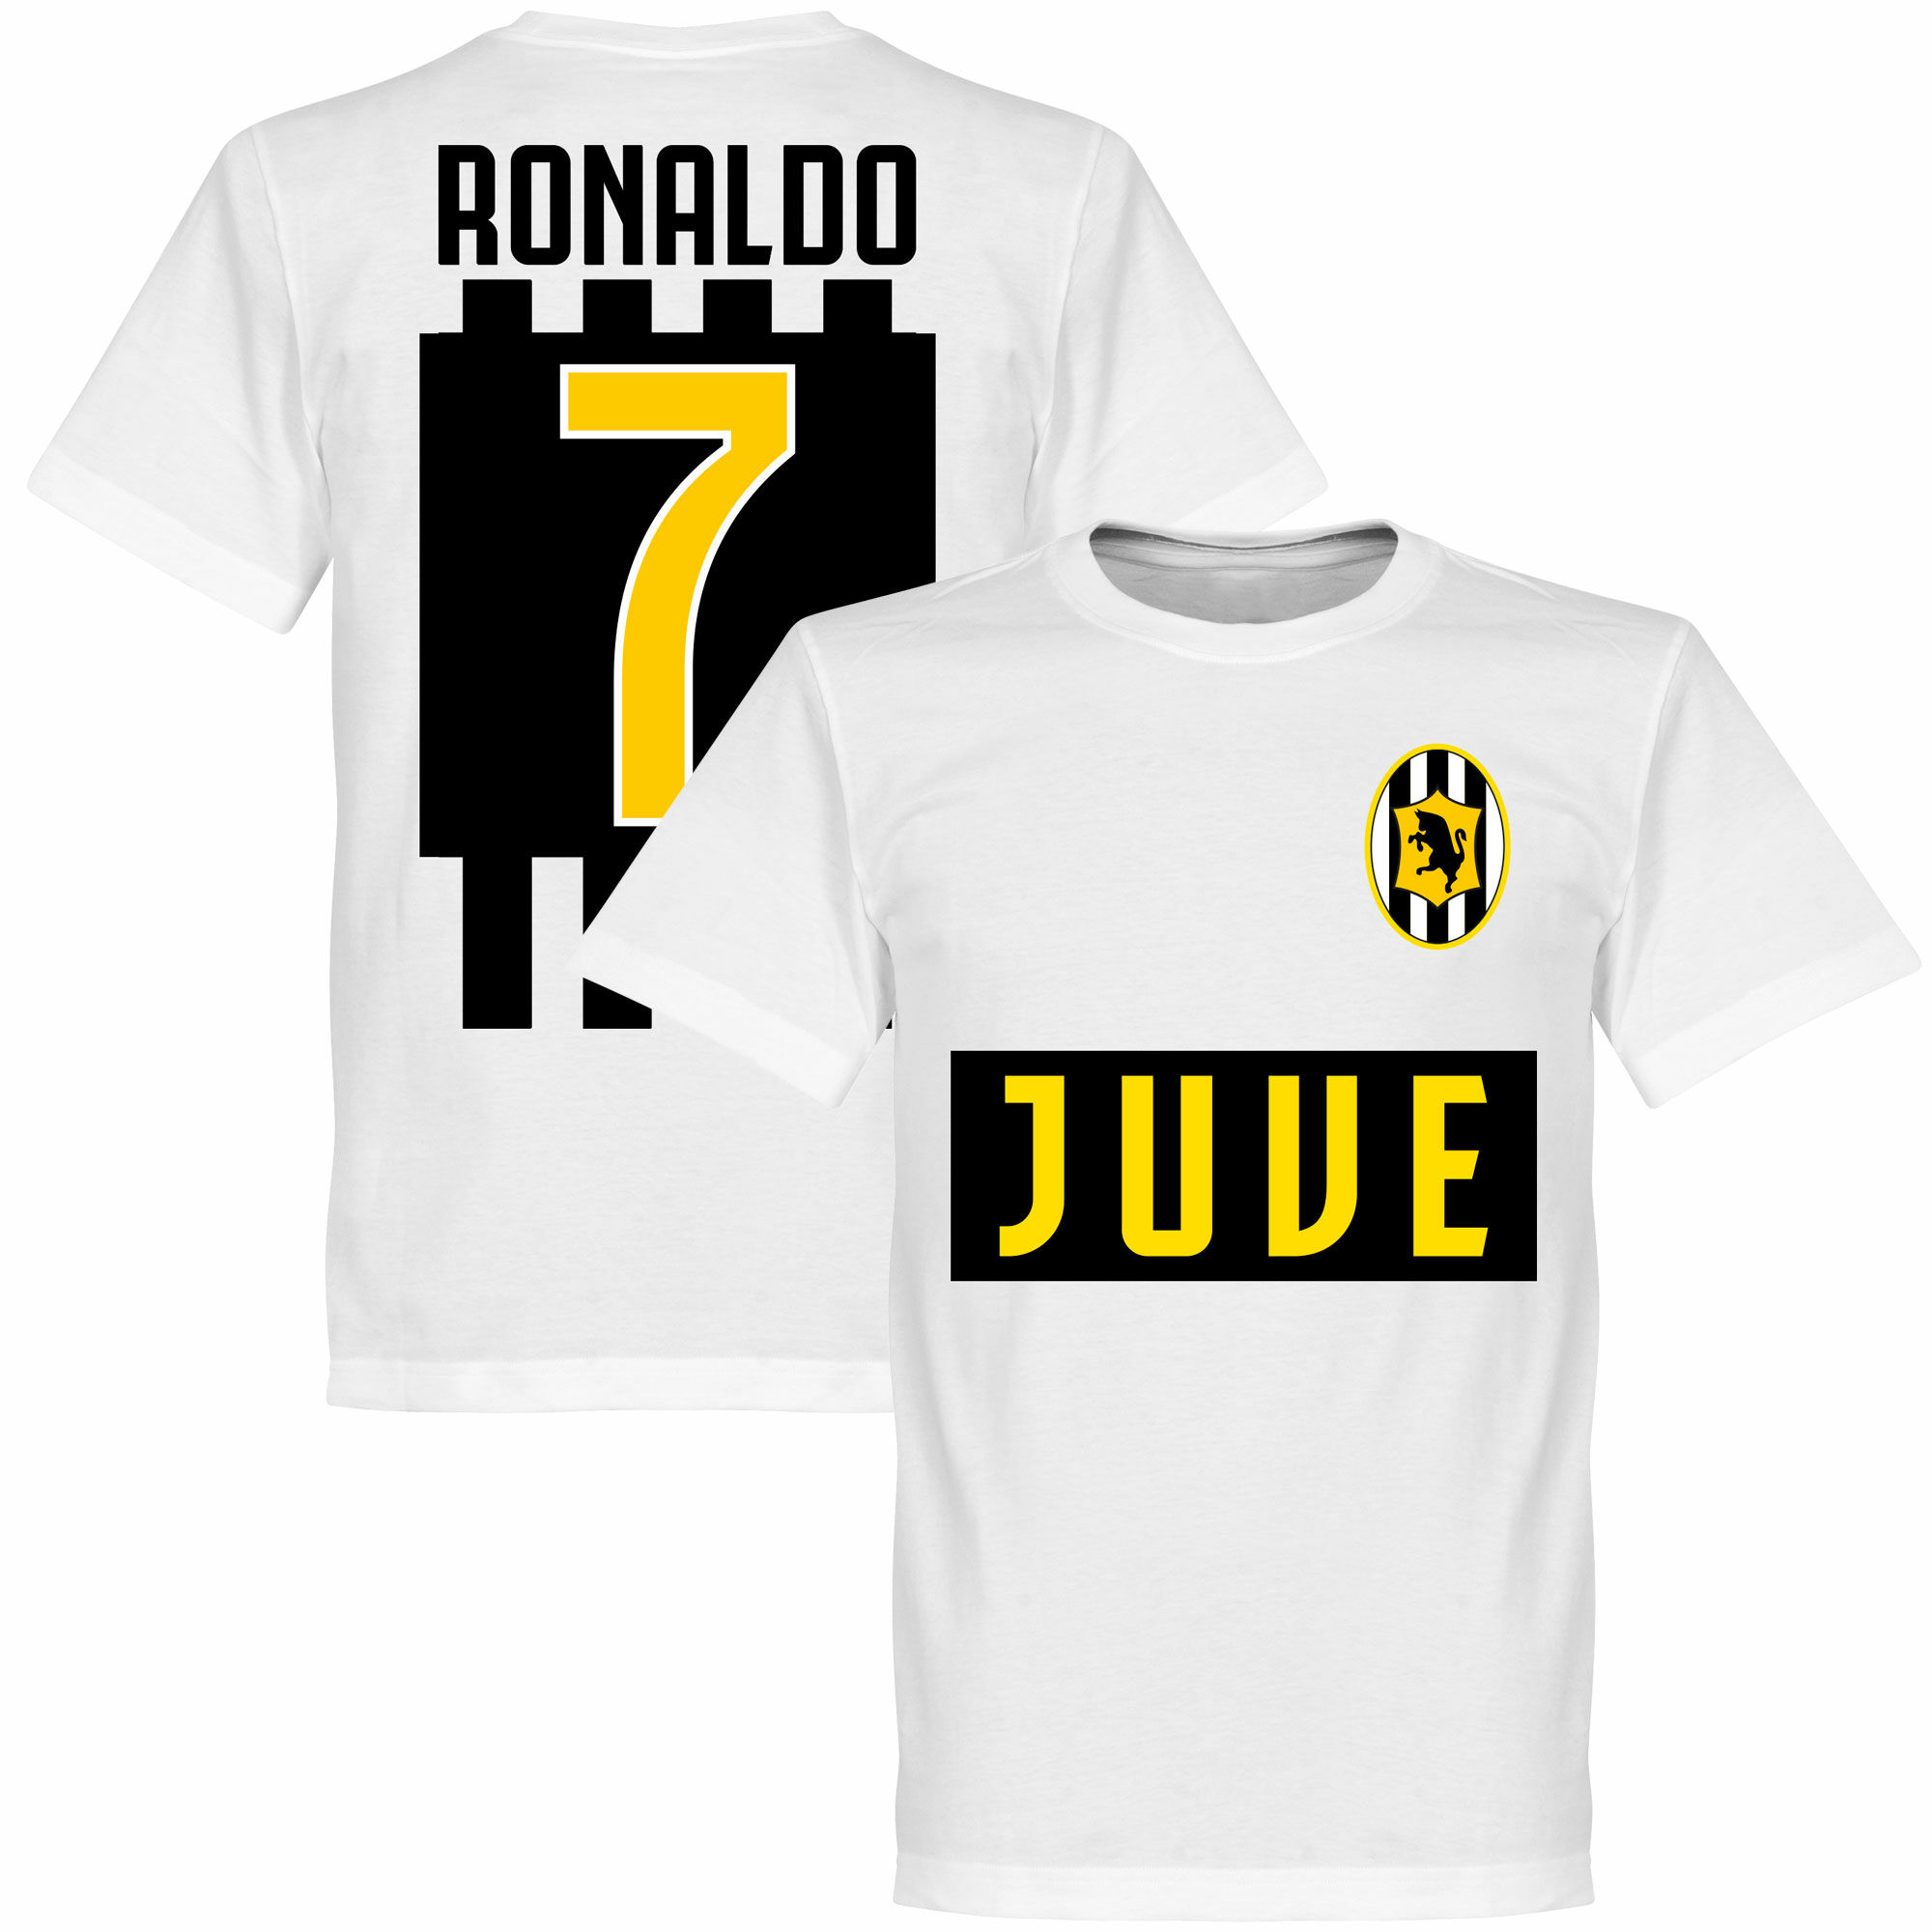 Juventus FC - Tričko dětské - bílé, Ronaldo, číslo 7